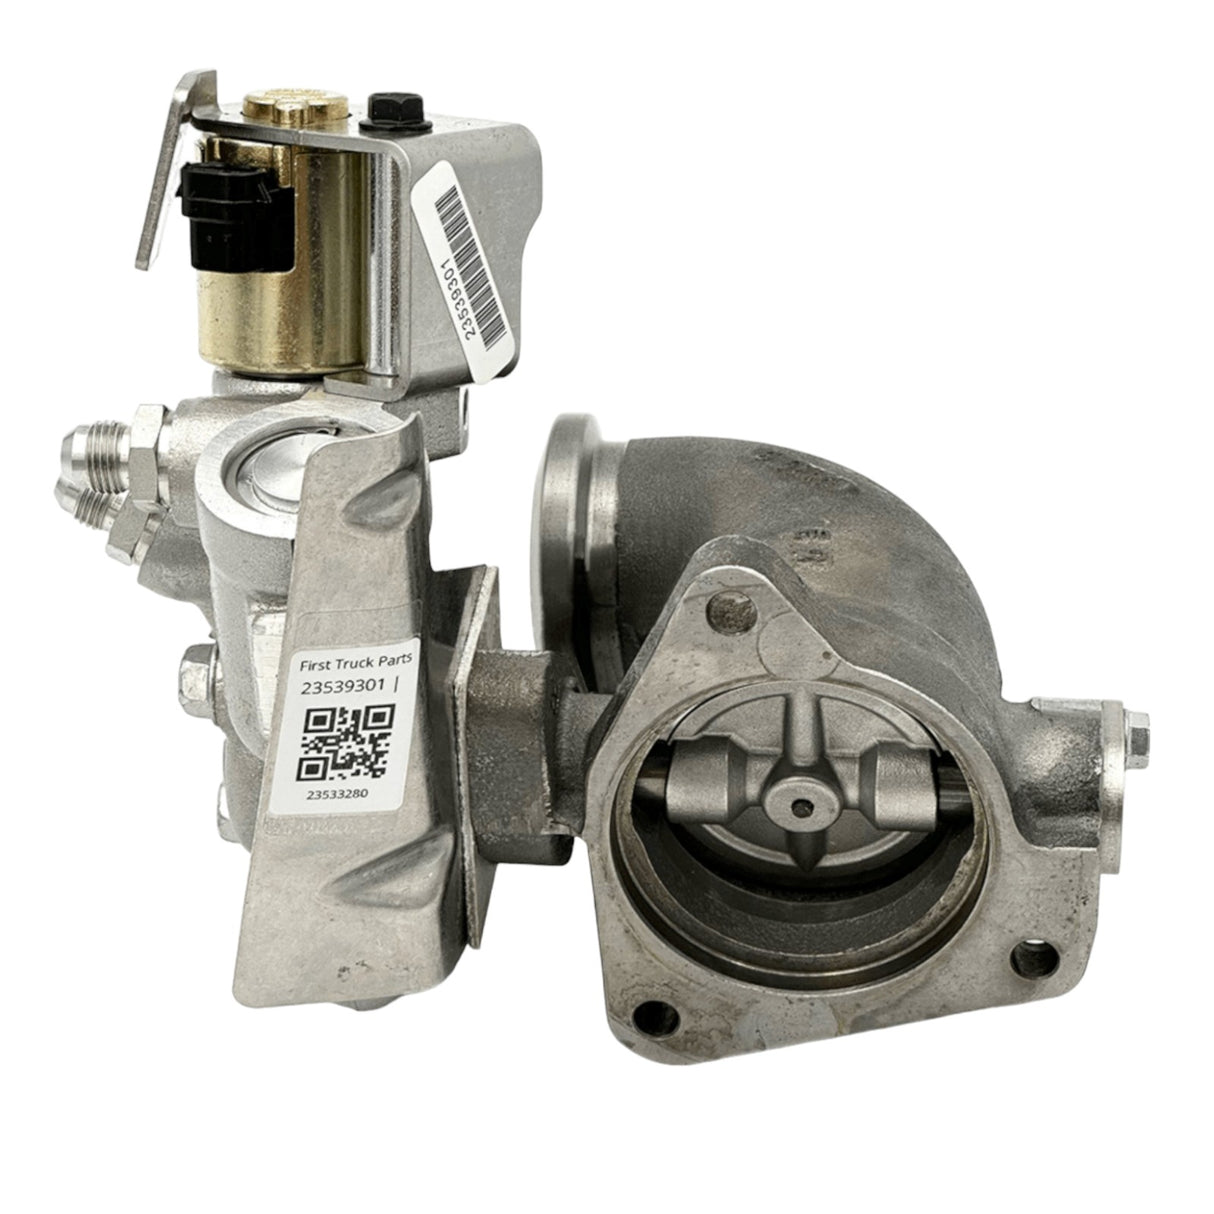 R23538844 Genuine Detroit Diesel Egr Exhaust Gas Recirculation Valve